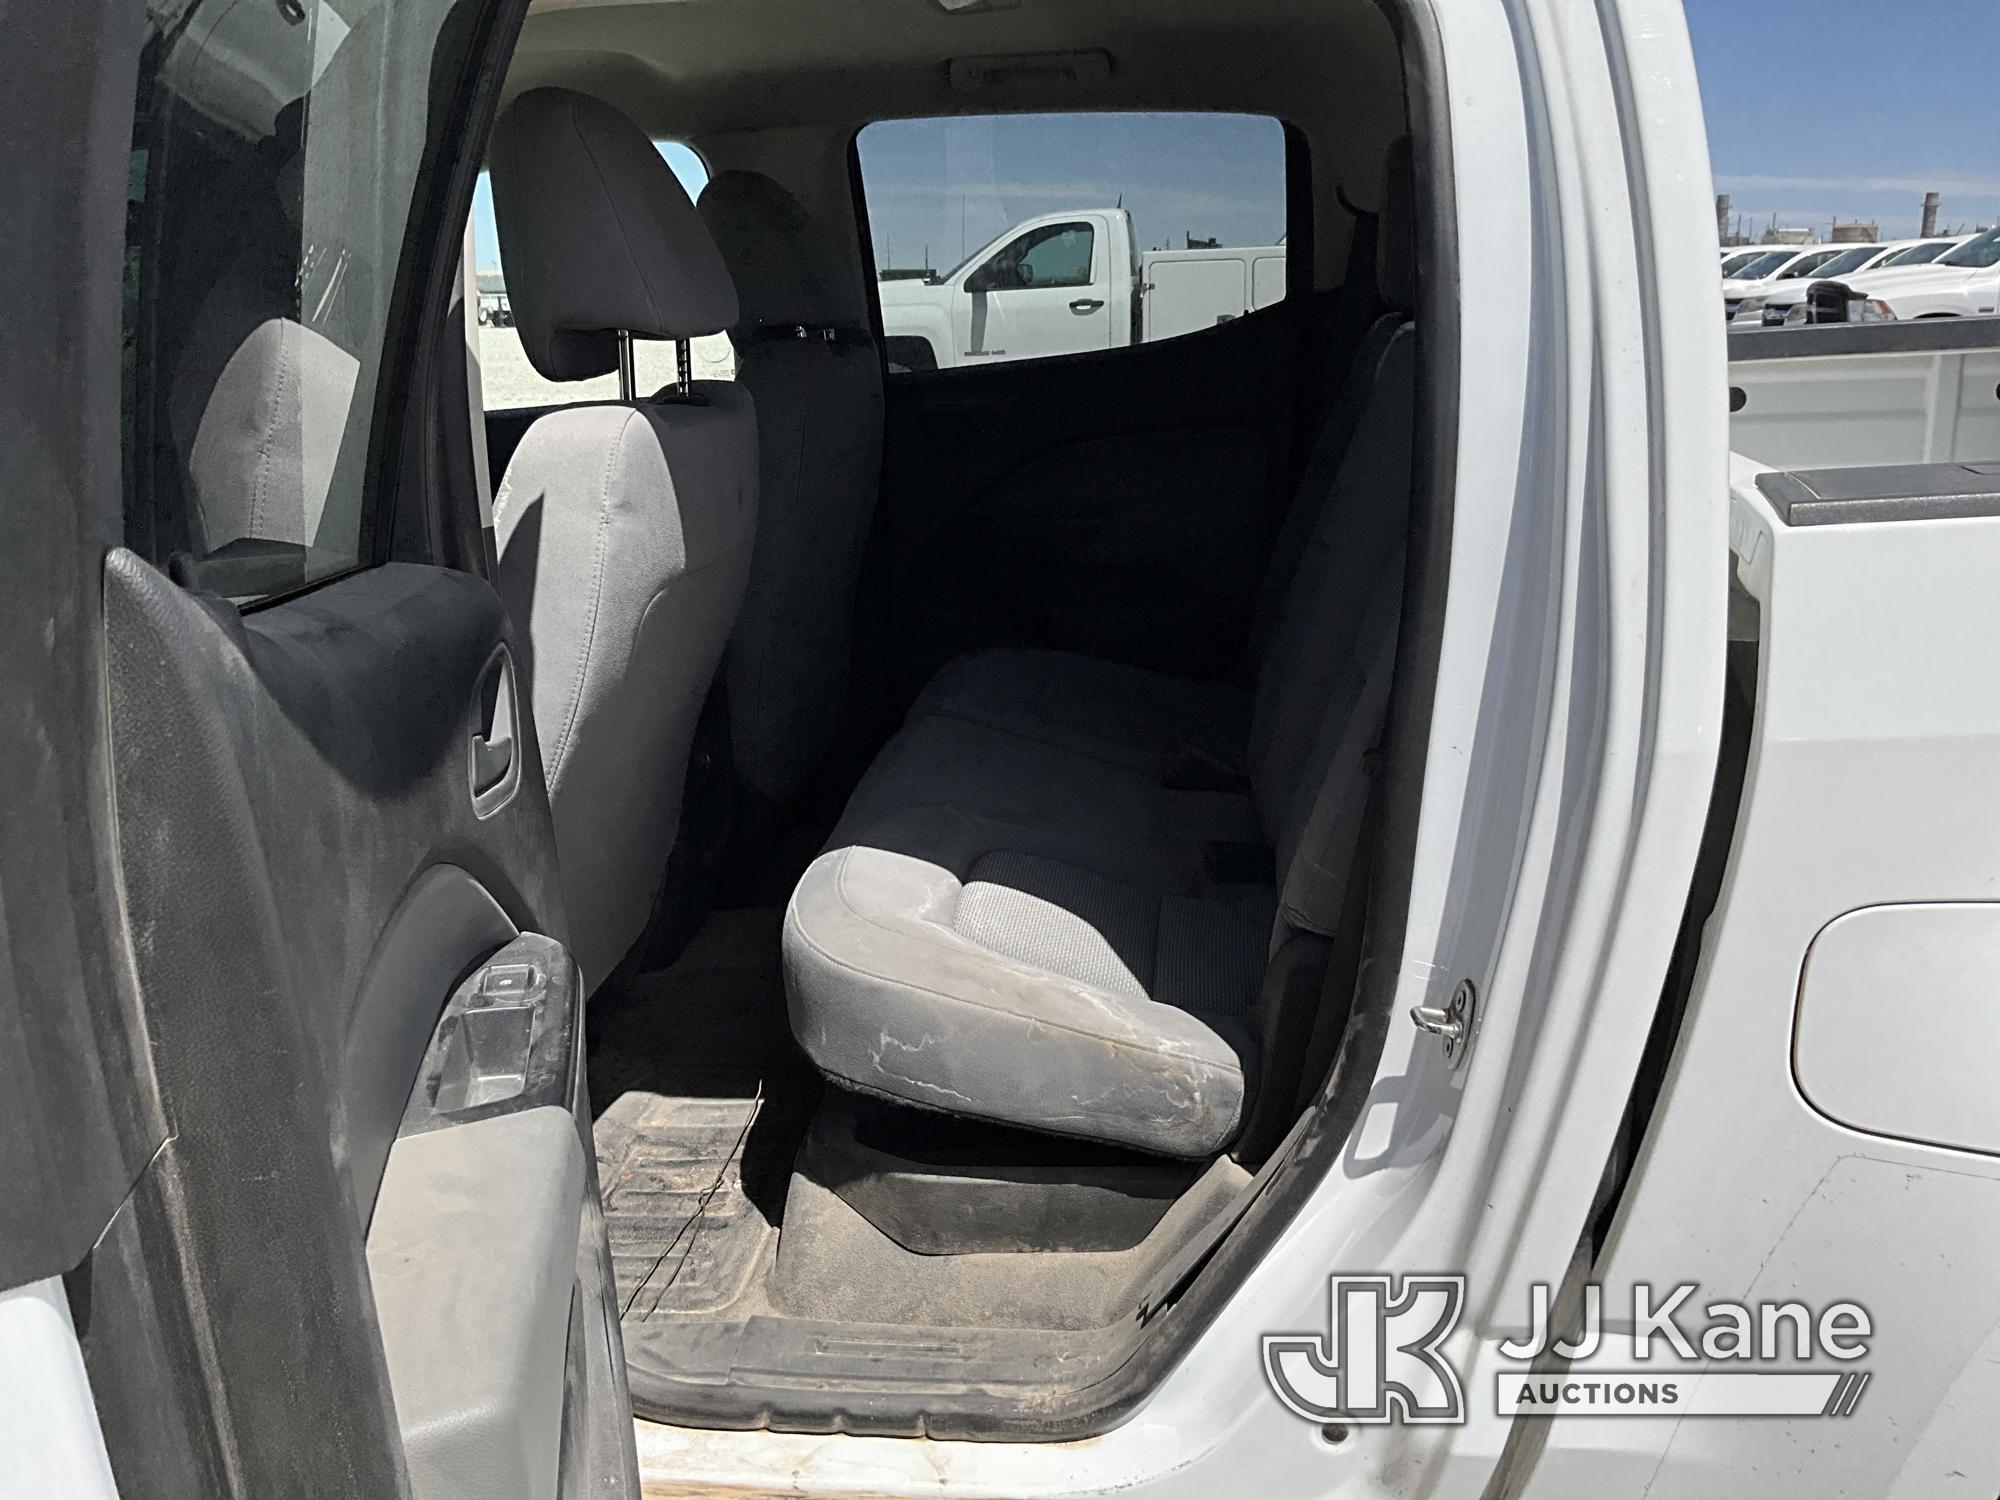 (El Paso, TX) 2015 Chevrolet Colorado 4x4 Crew-Cab Pickup Truck Runs & Moves) (Paint Damage, Spares